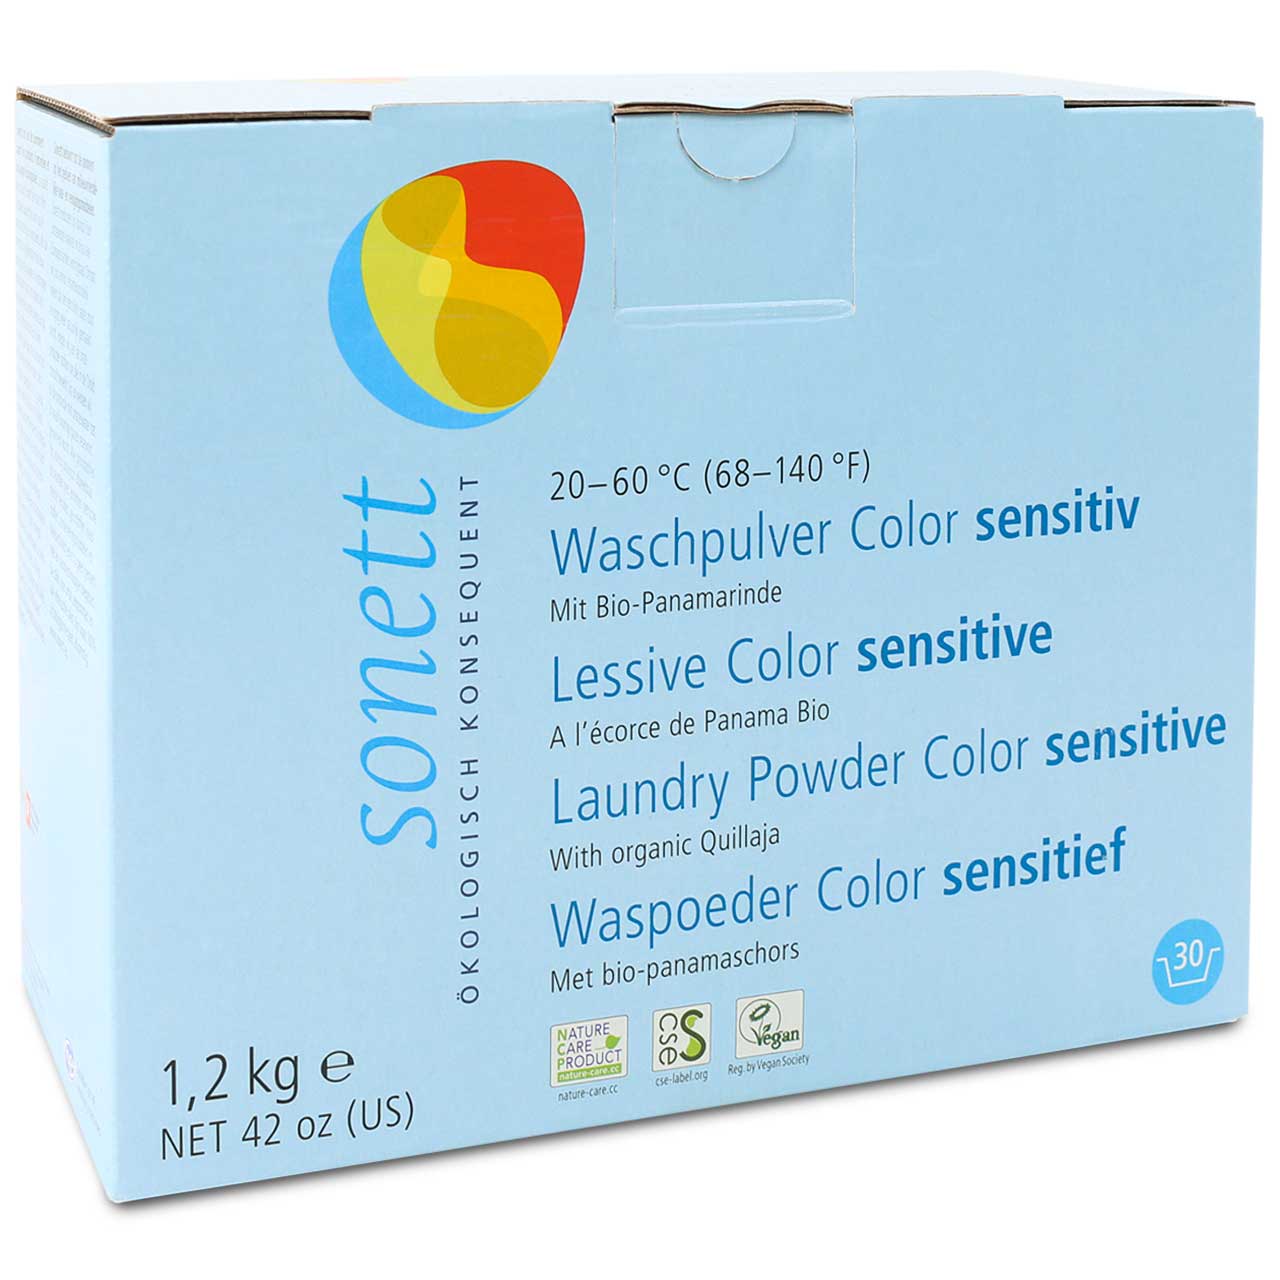 Waschpulver Color sensitiv 1,2 kg